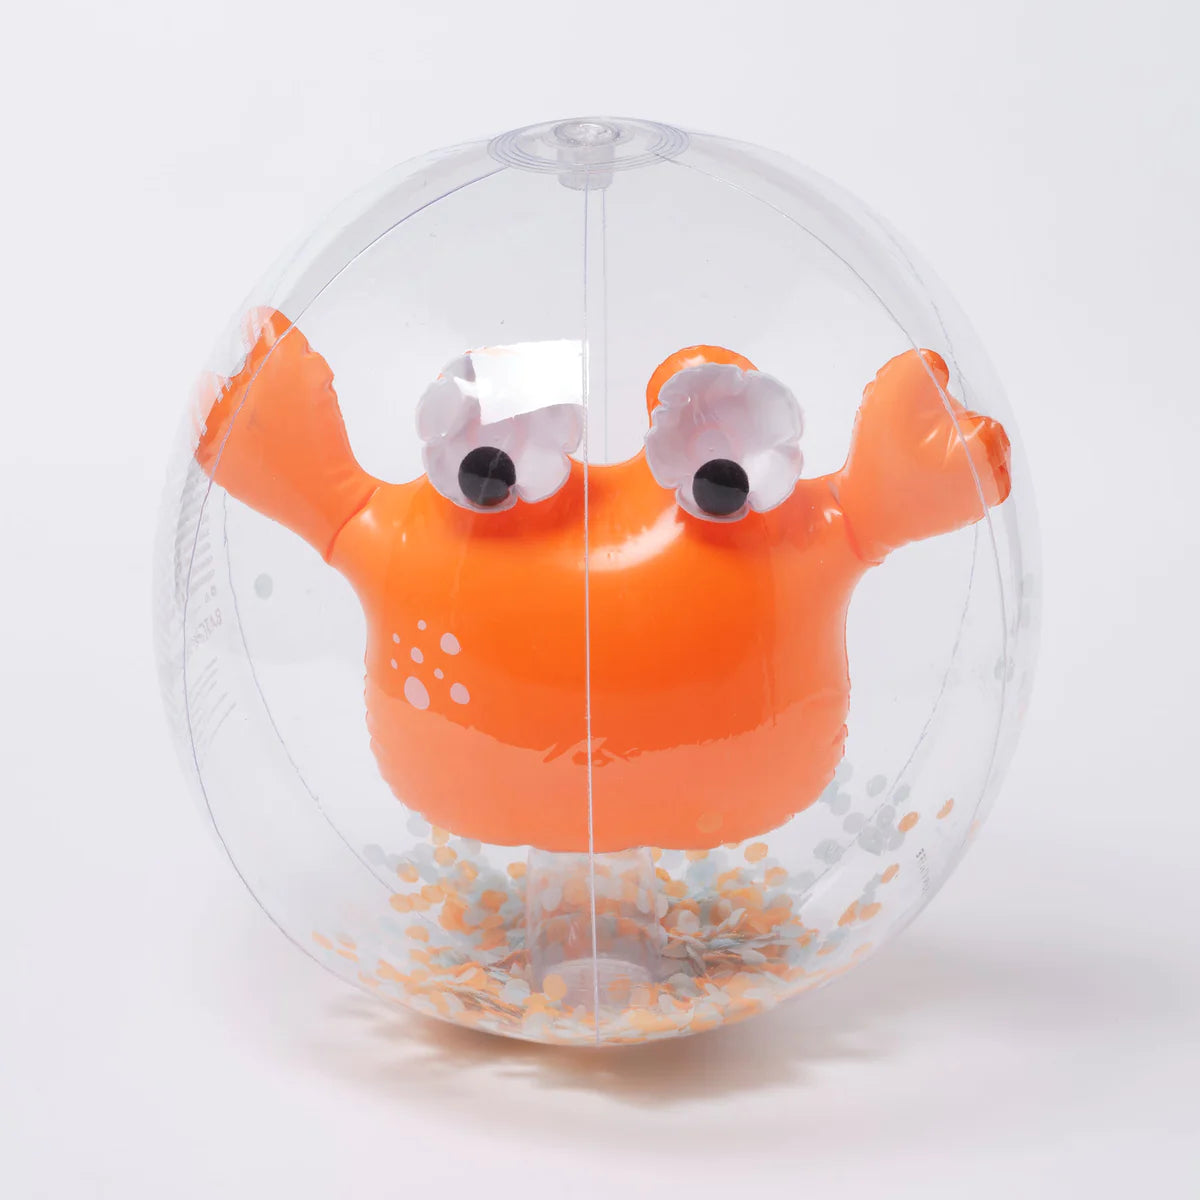 3D Beach Ball - Sonny the Sea Creature